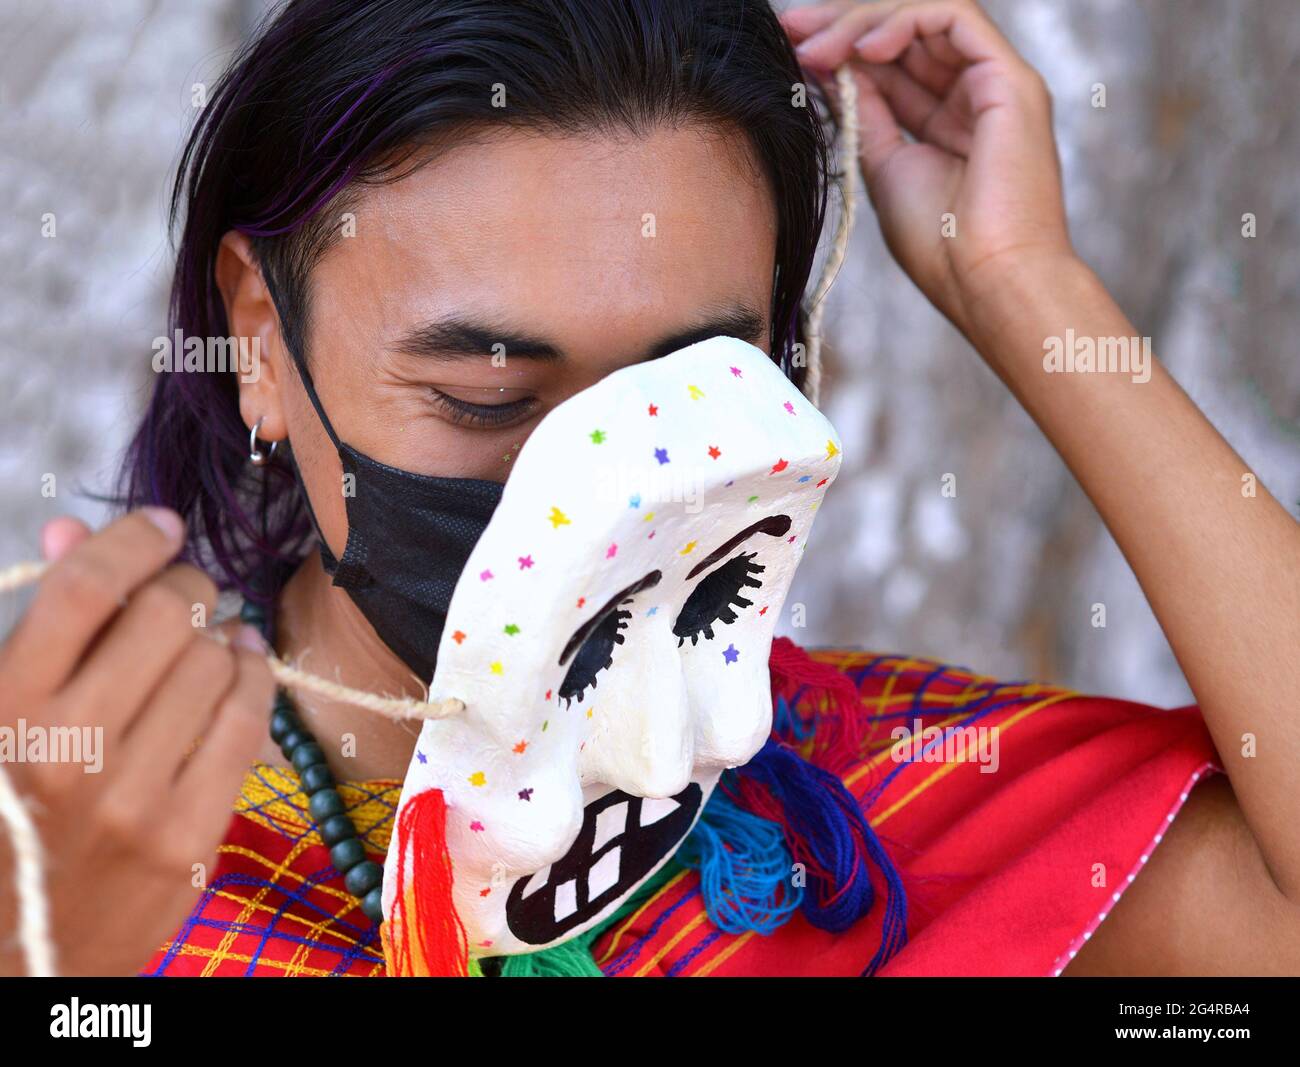 Un jeune artiste mexicain (fabricant de masques, peintre de masques) enlève un de ses masques paper-mache peints à la main et montre un masque chirurgical noir en dessous. Banque D'Images